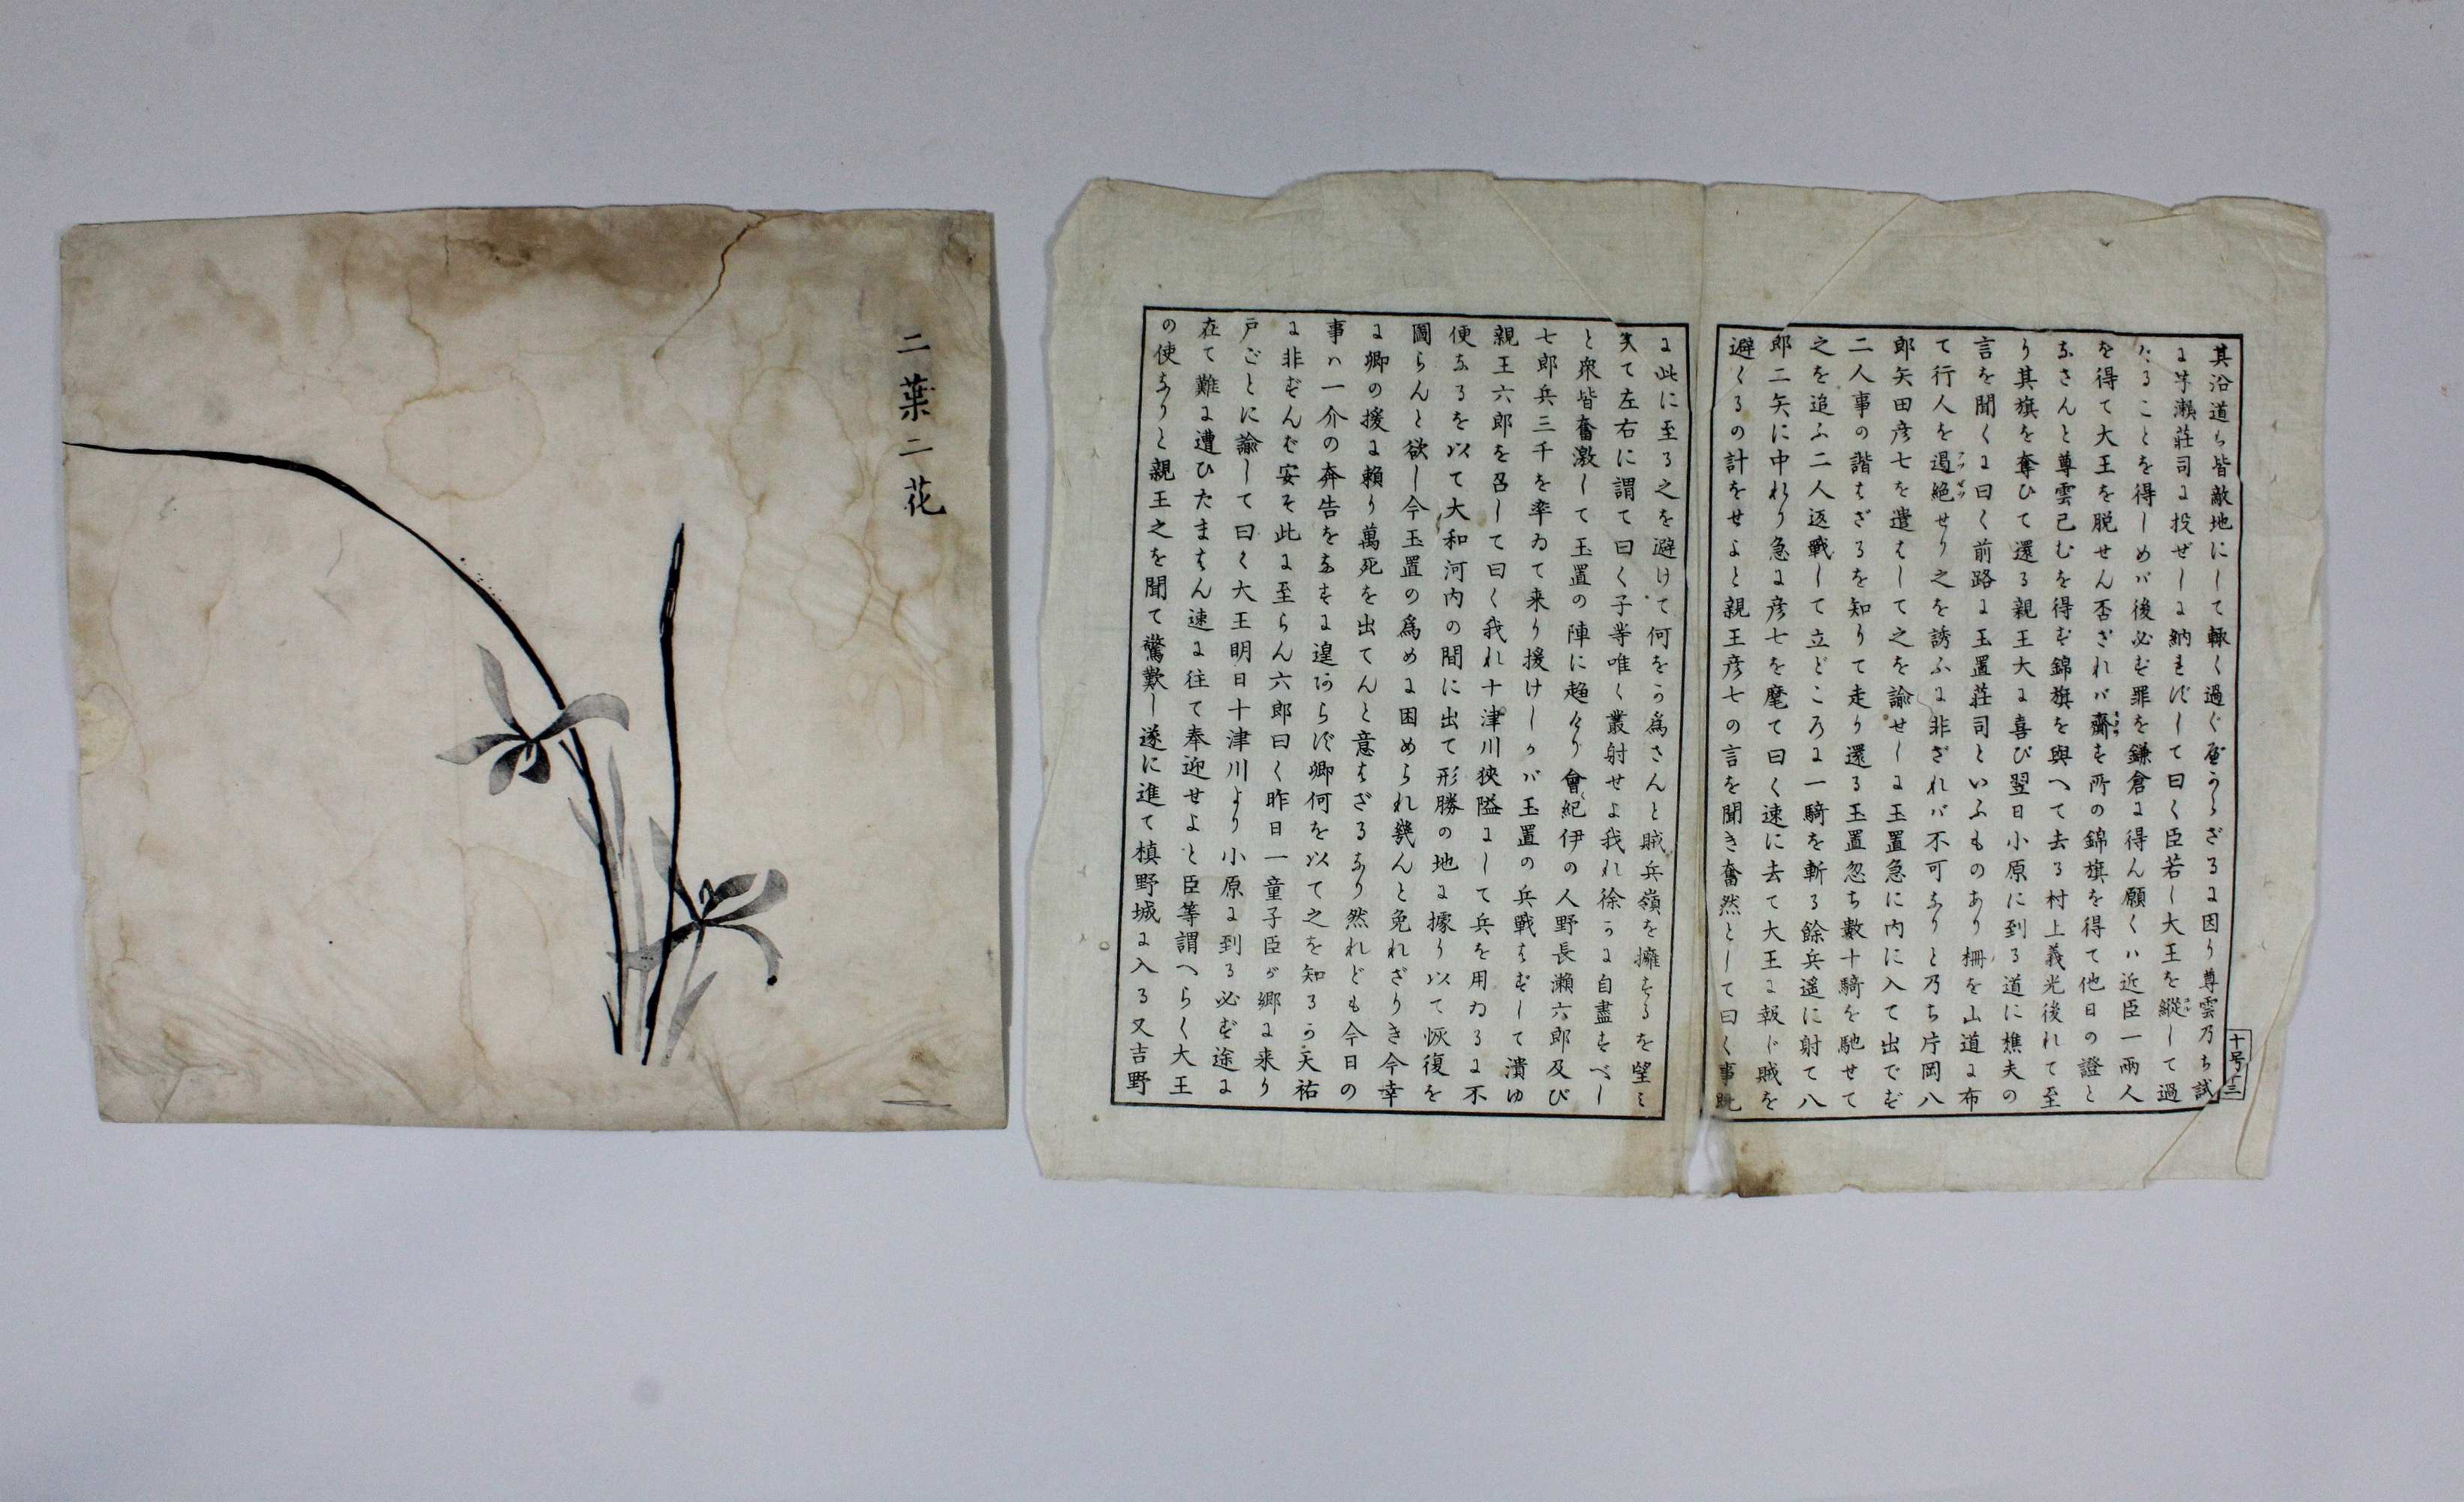 Paar Holzschnitte, China, 1x chinesische Kalligraphie, doppelseite